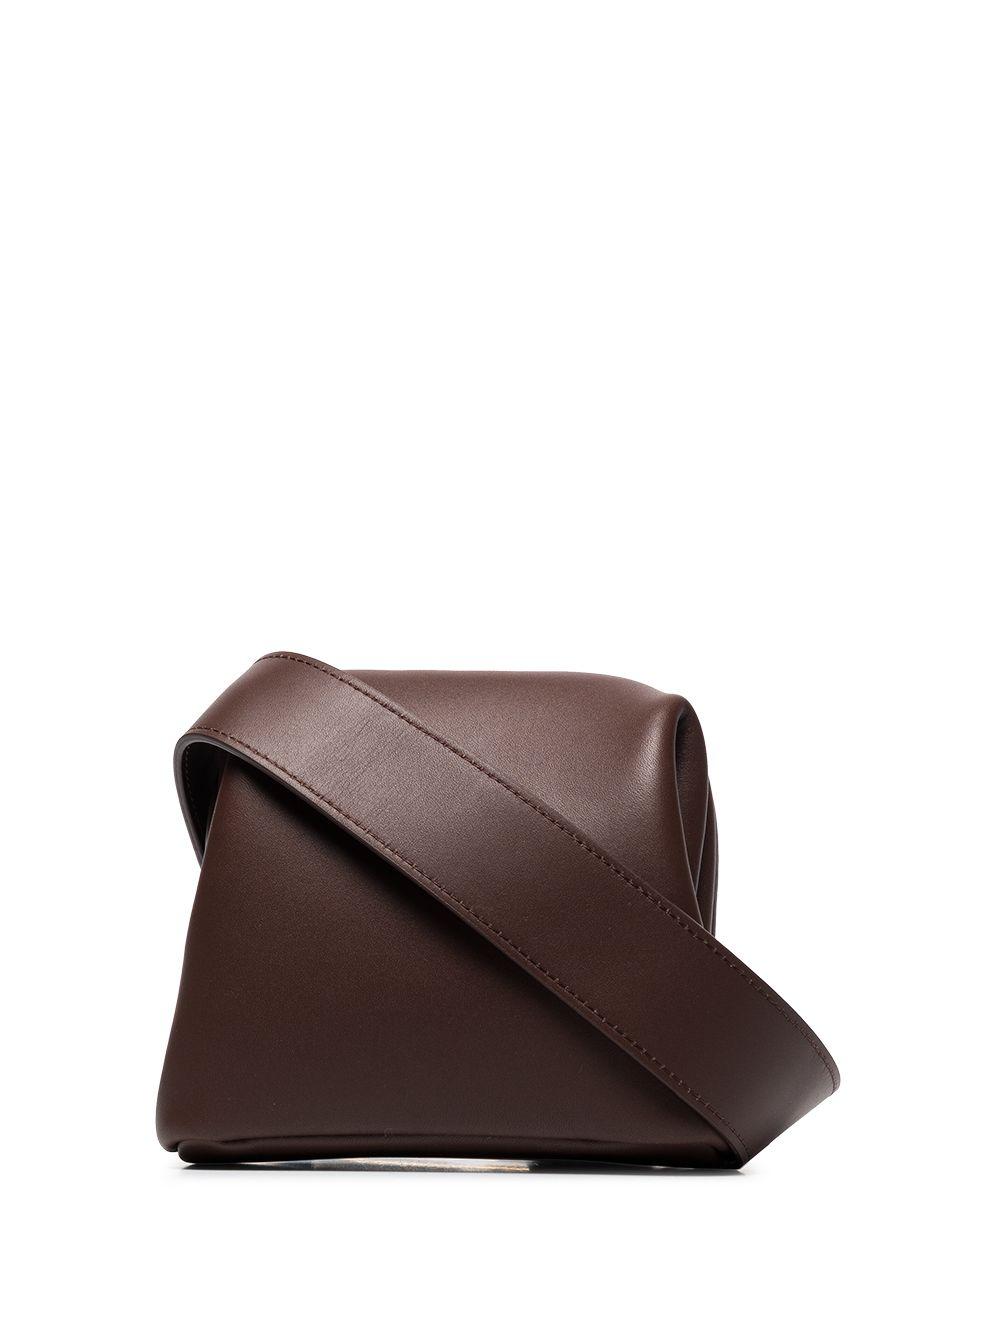 OSOI Mini Brot Belt Bag in Brown | Lyst